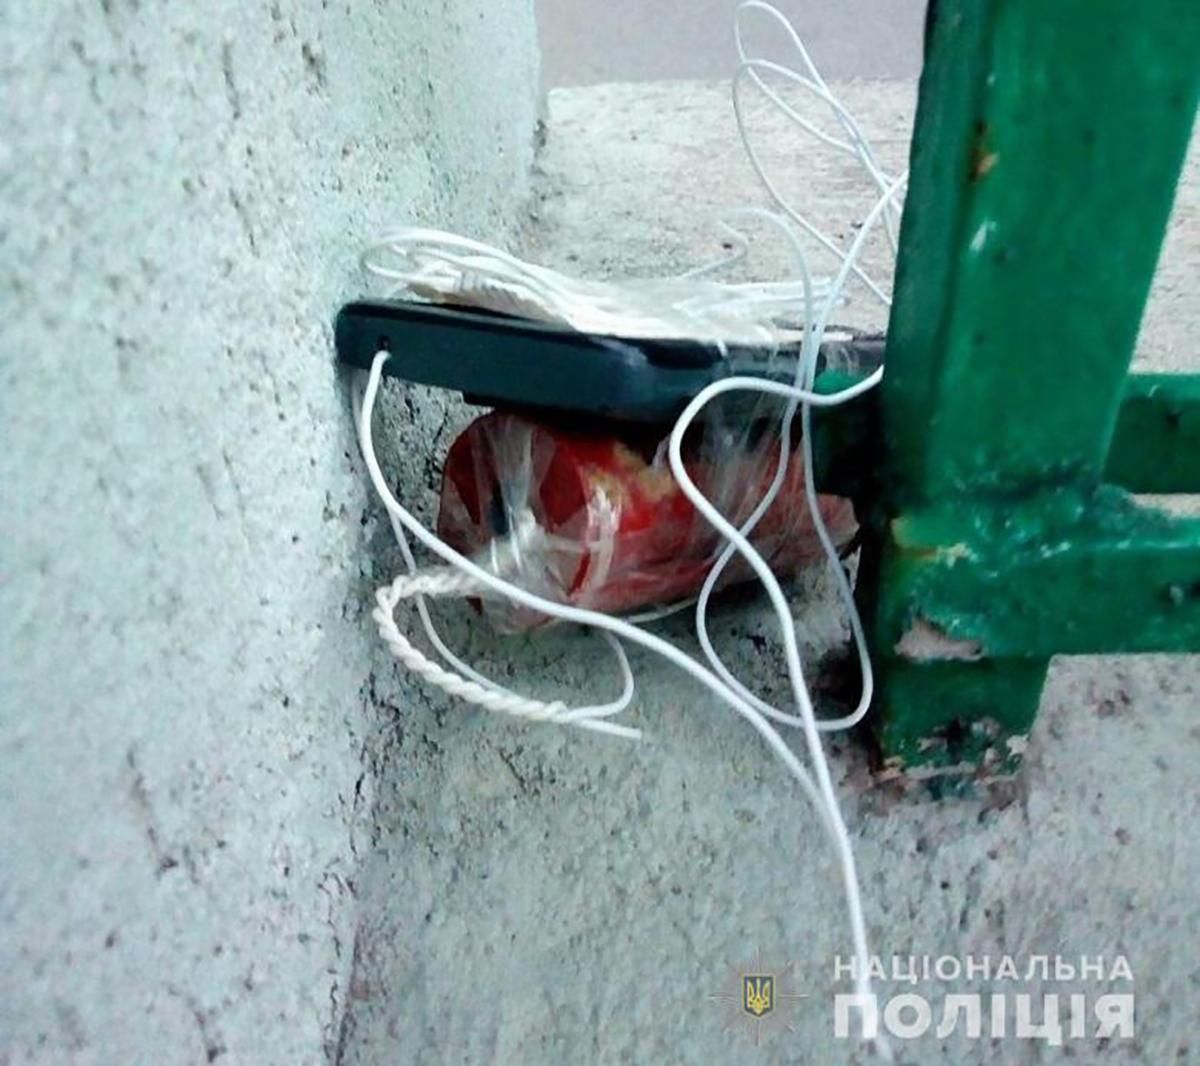 Біля офісу ОПЗЖ у Києві знайшли вибухівку: поліція вже знешкодила її